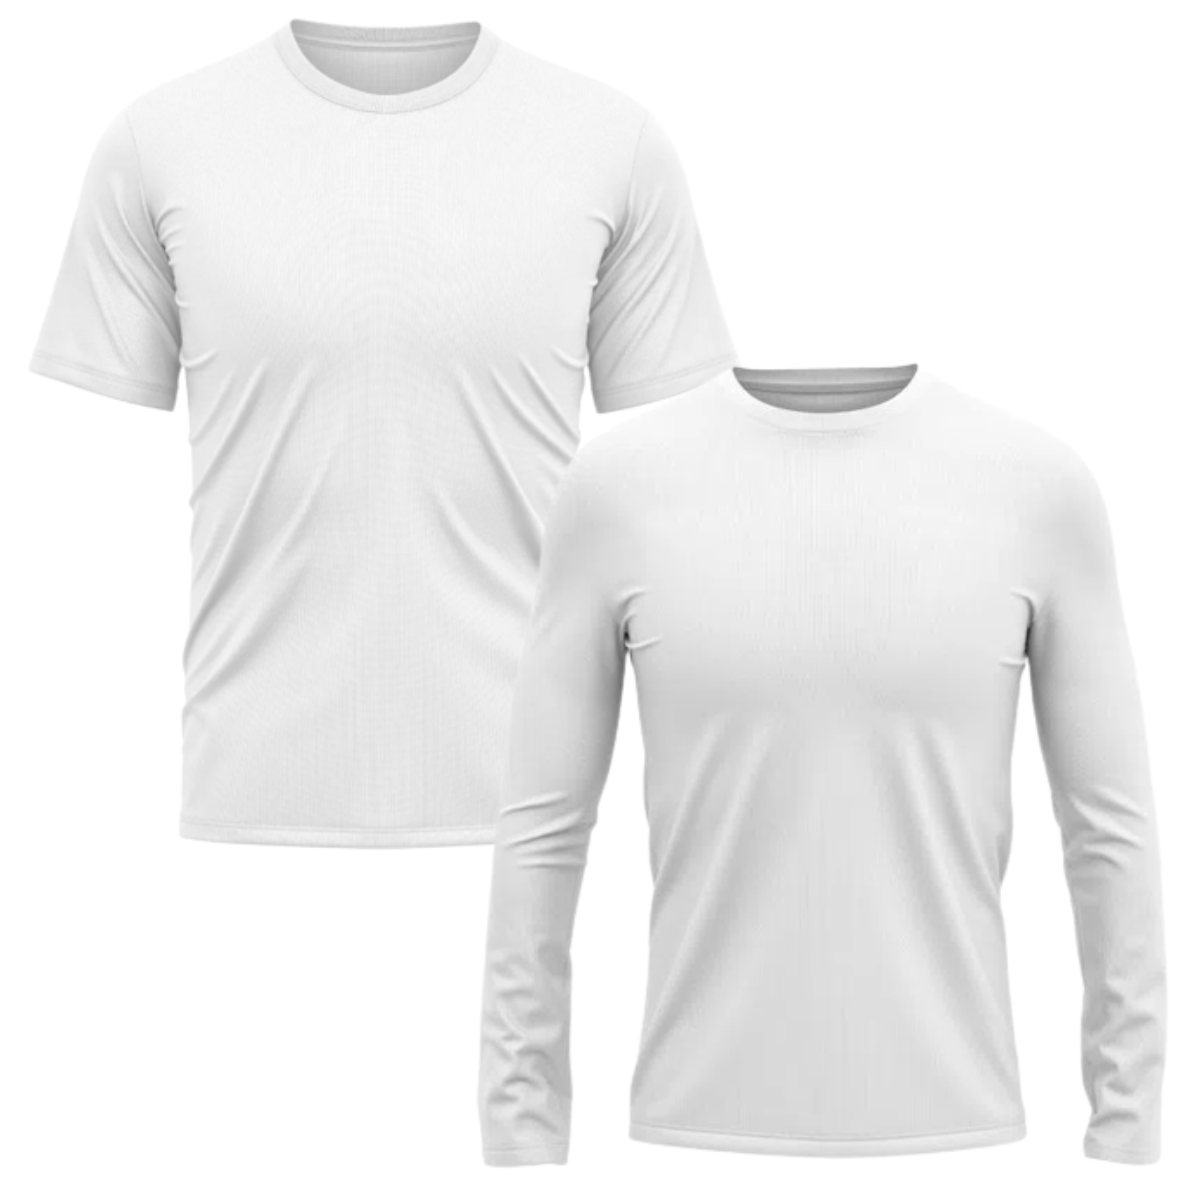 Kit 2 Camisas térmicas e com proteção Uv Manga Longa e Manga Curta - Branca  - 2 Branca / P